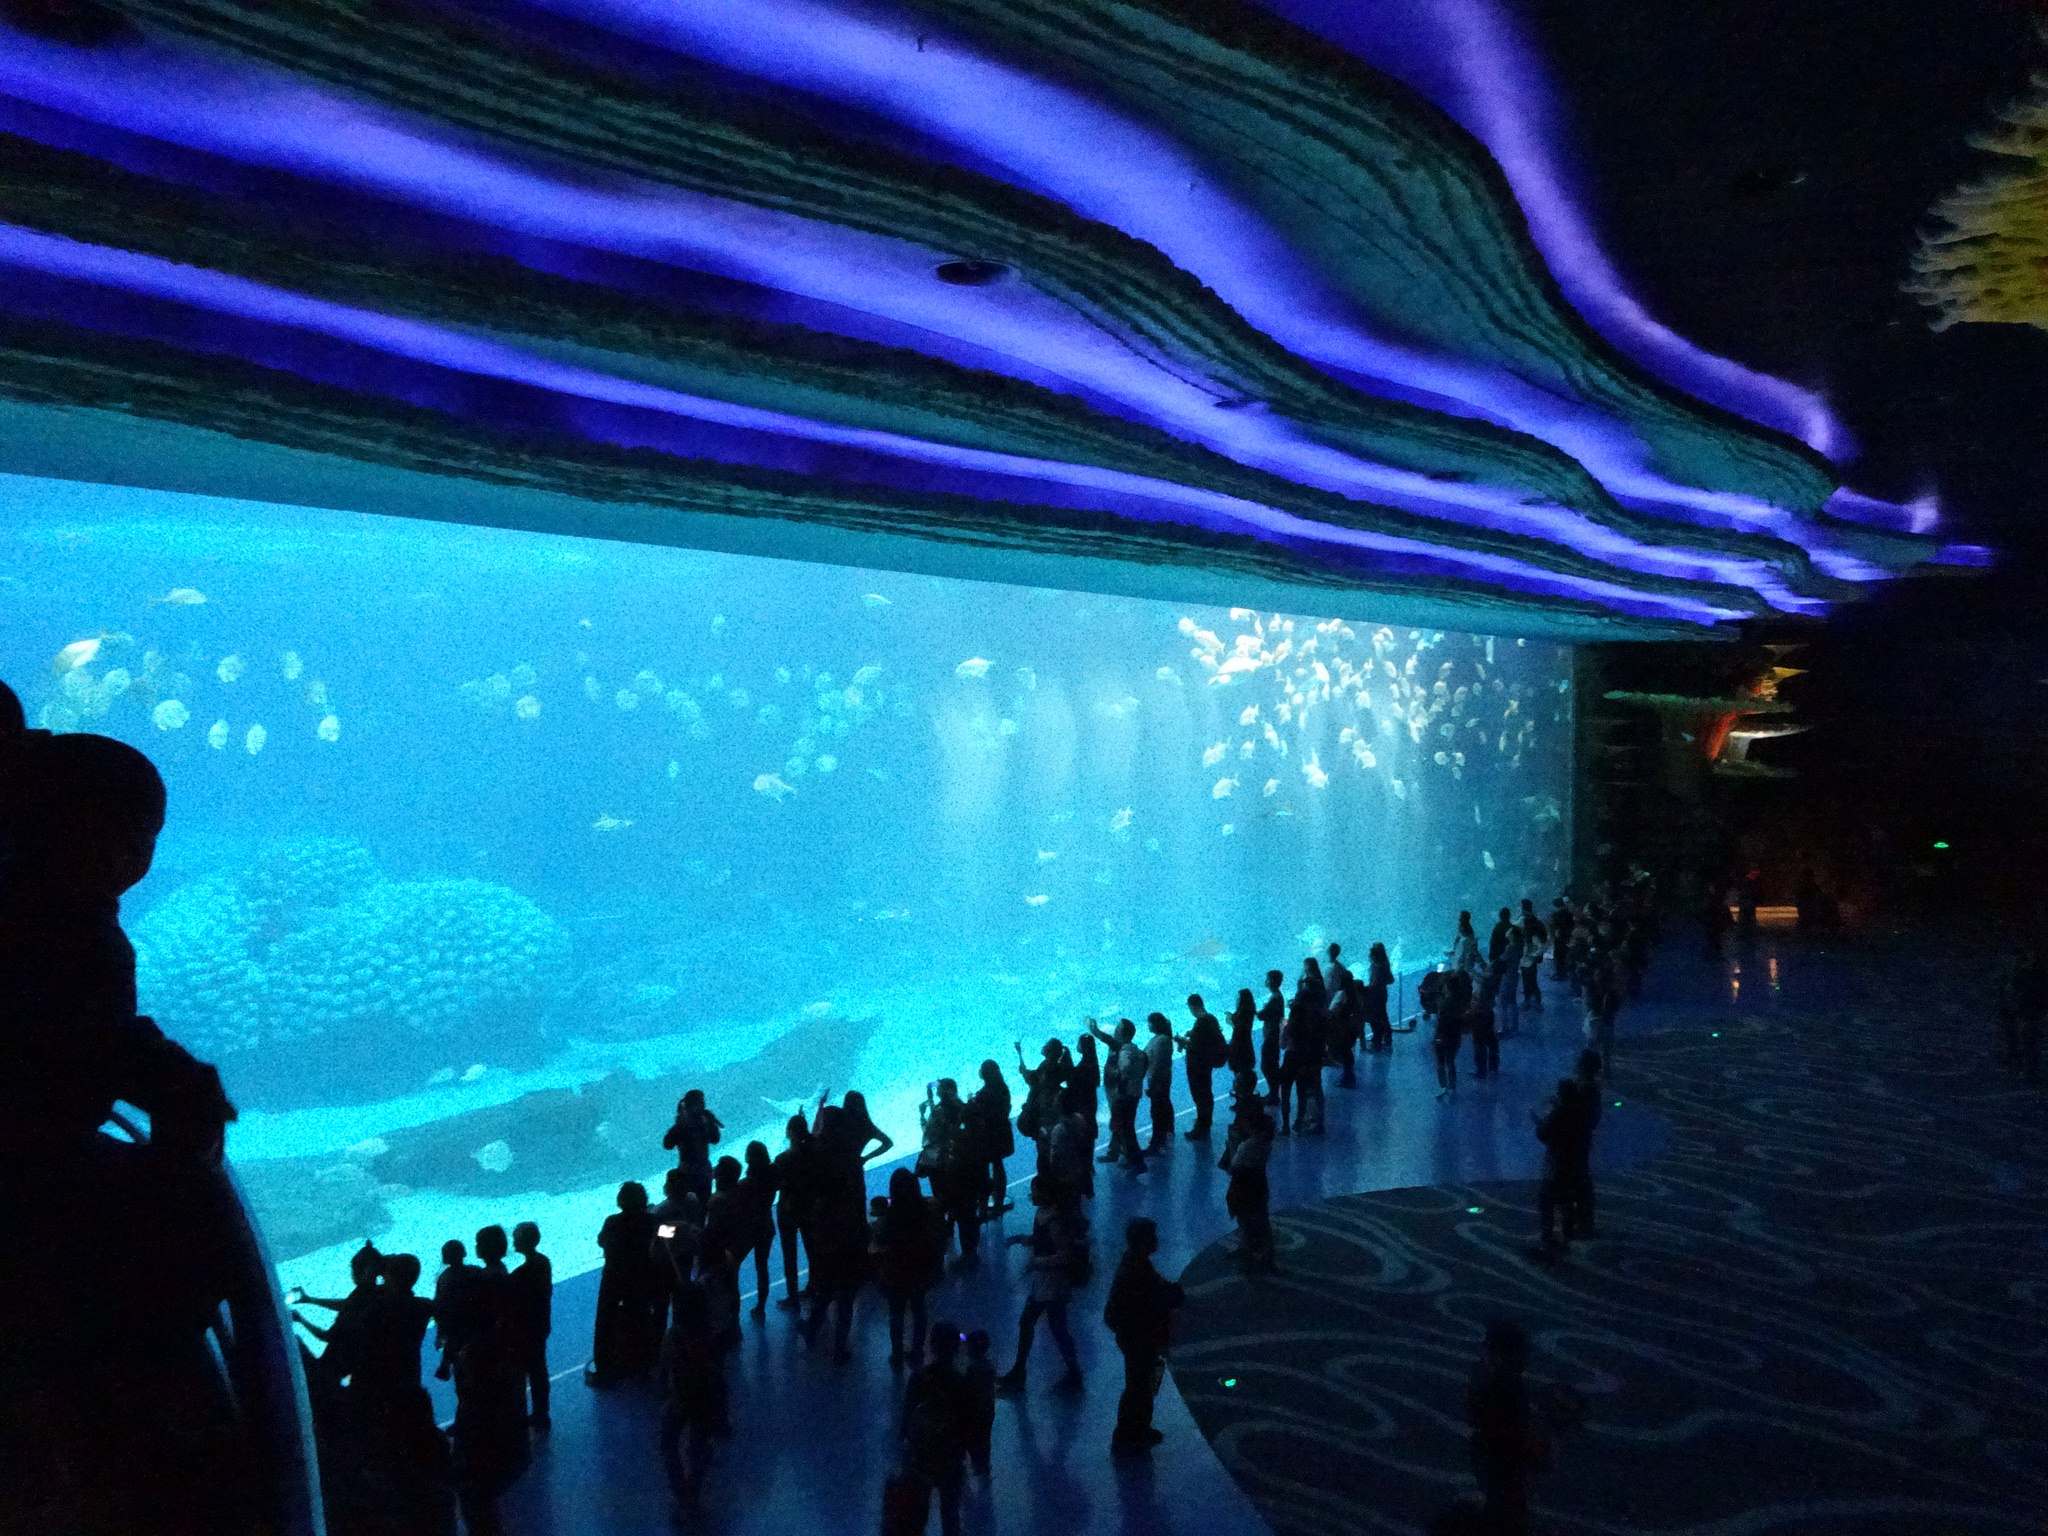 chimelong ocean kingdom13 Chimelong Ocean Kingdom   Worlds Largest Aquarium